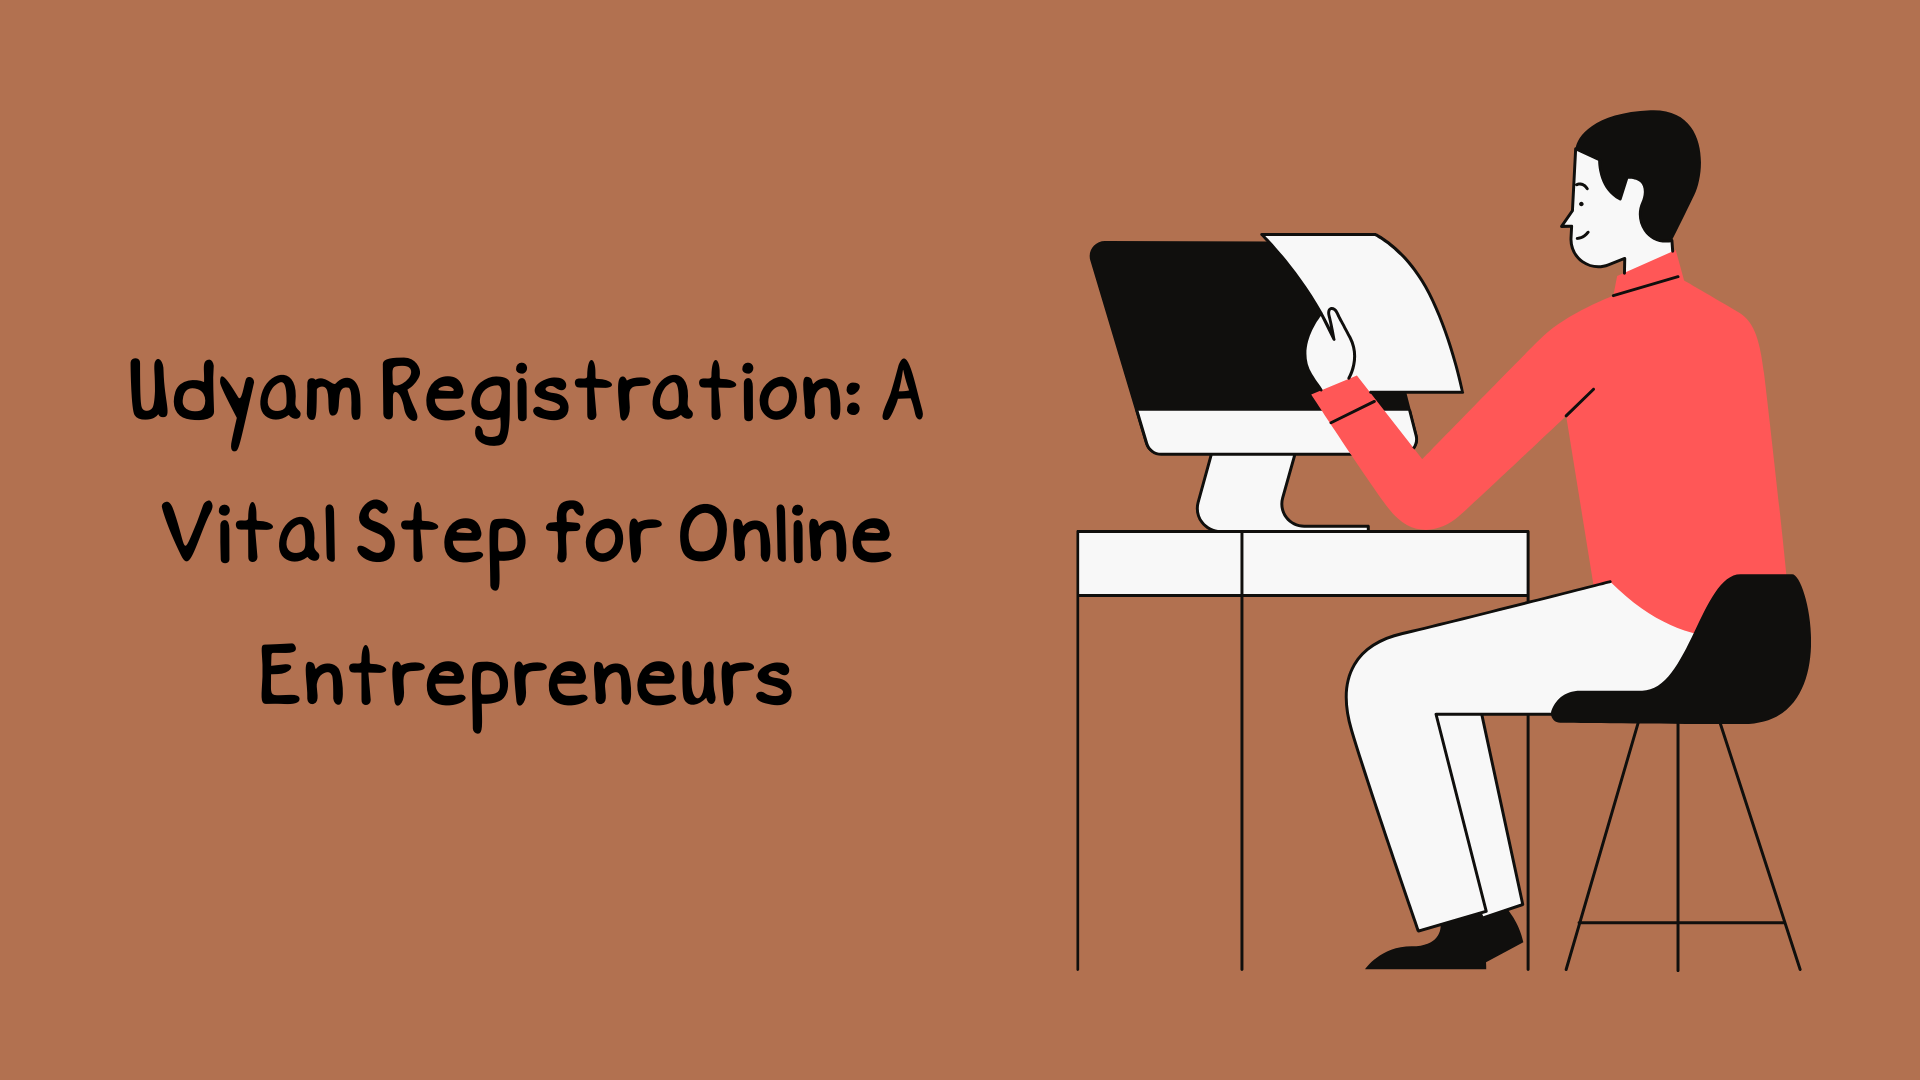 Udyam Registration: A Vital Step for Online Entrepreneurs